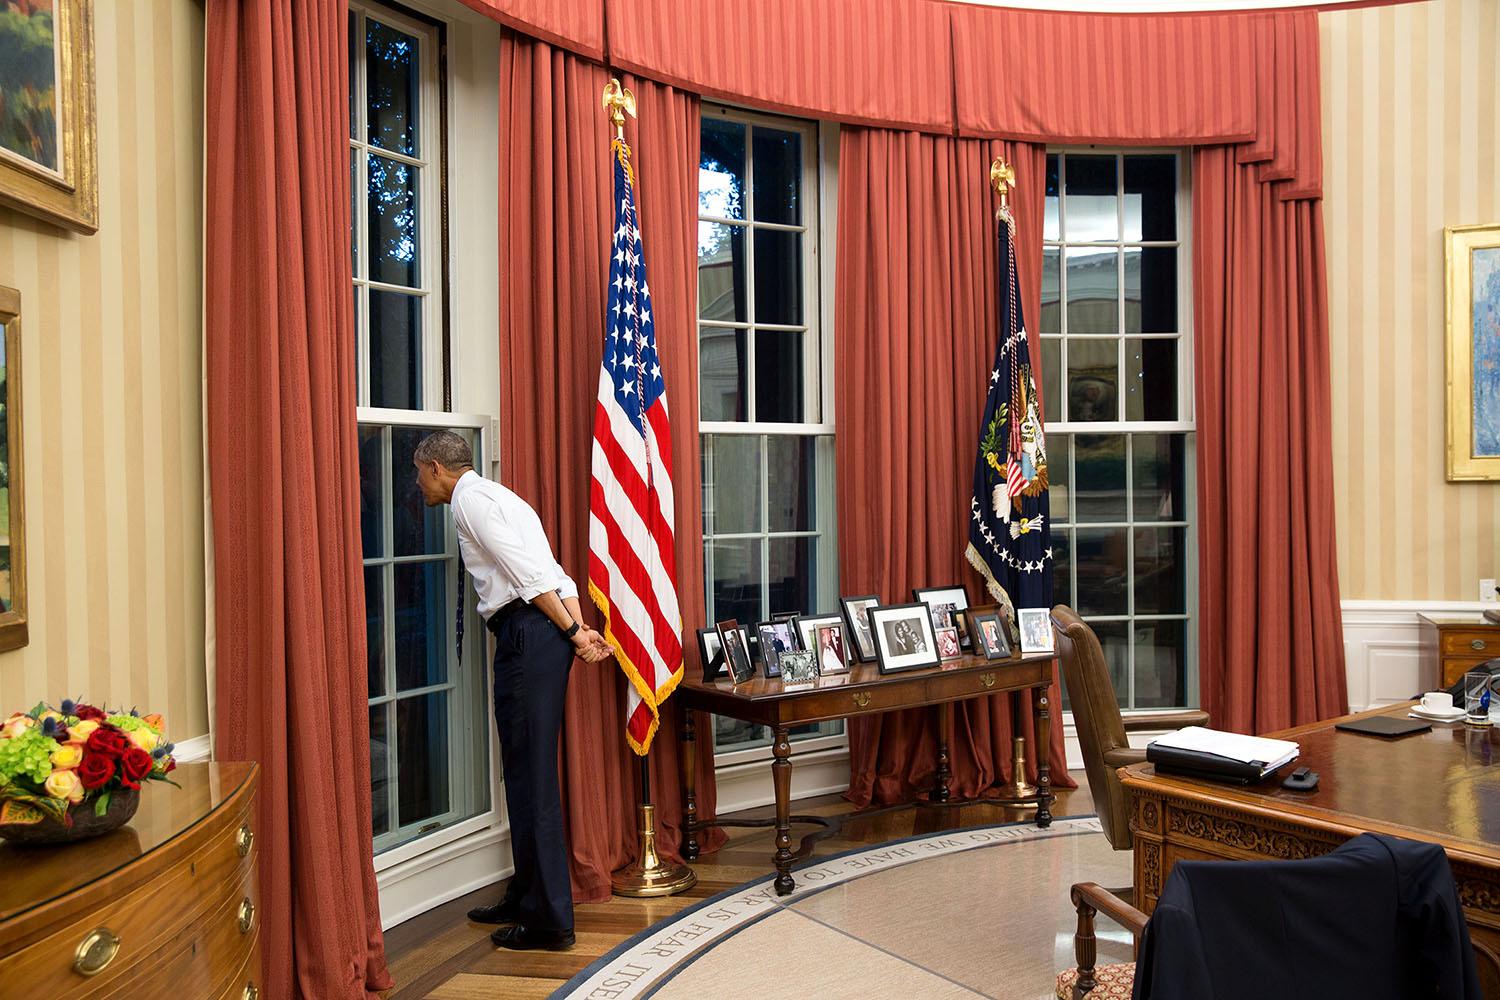 Obama tittar ut genom ett fönster i Ovala rummet samtidigt som en storm passerar utanför.